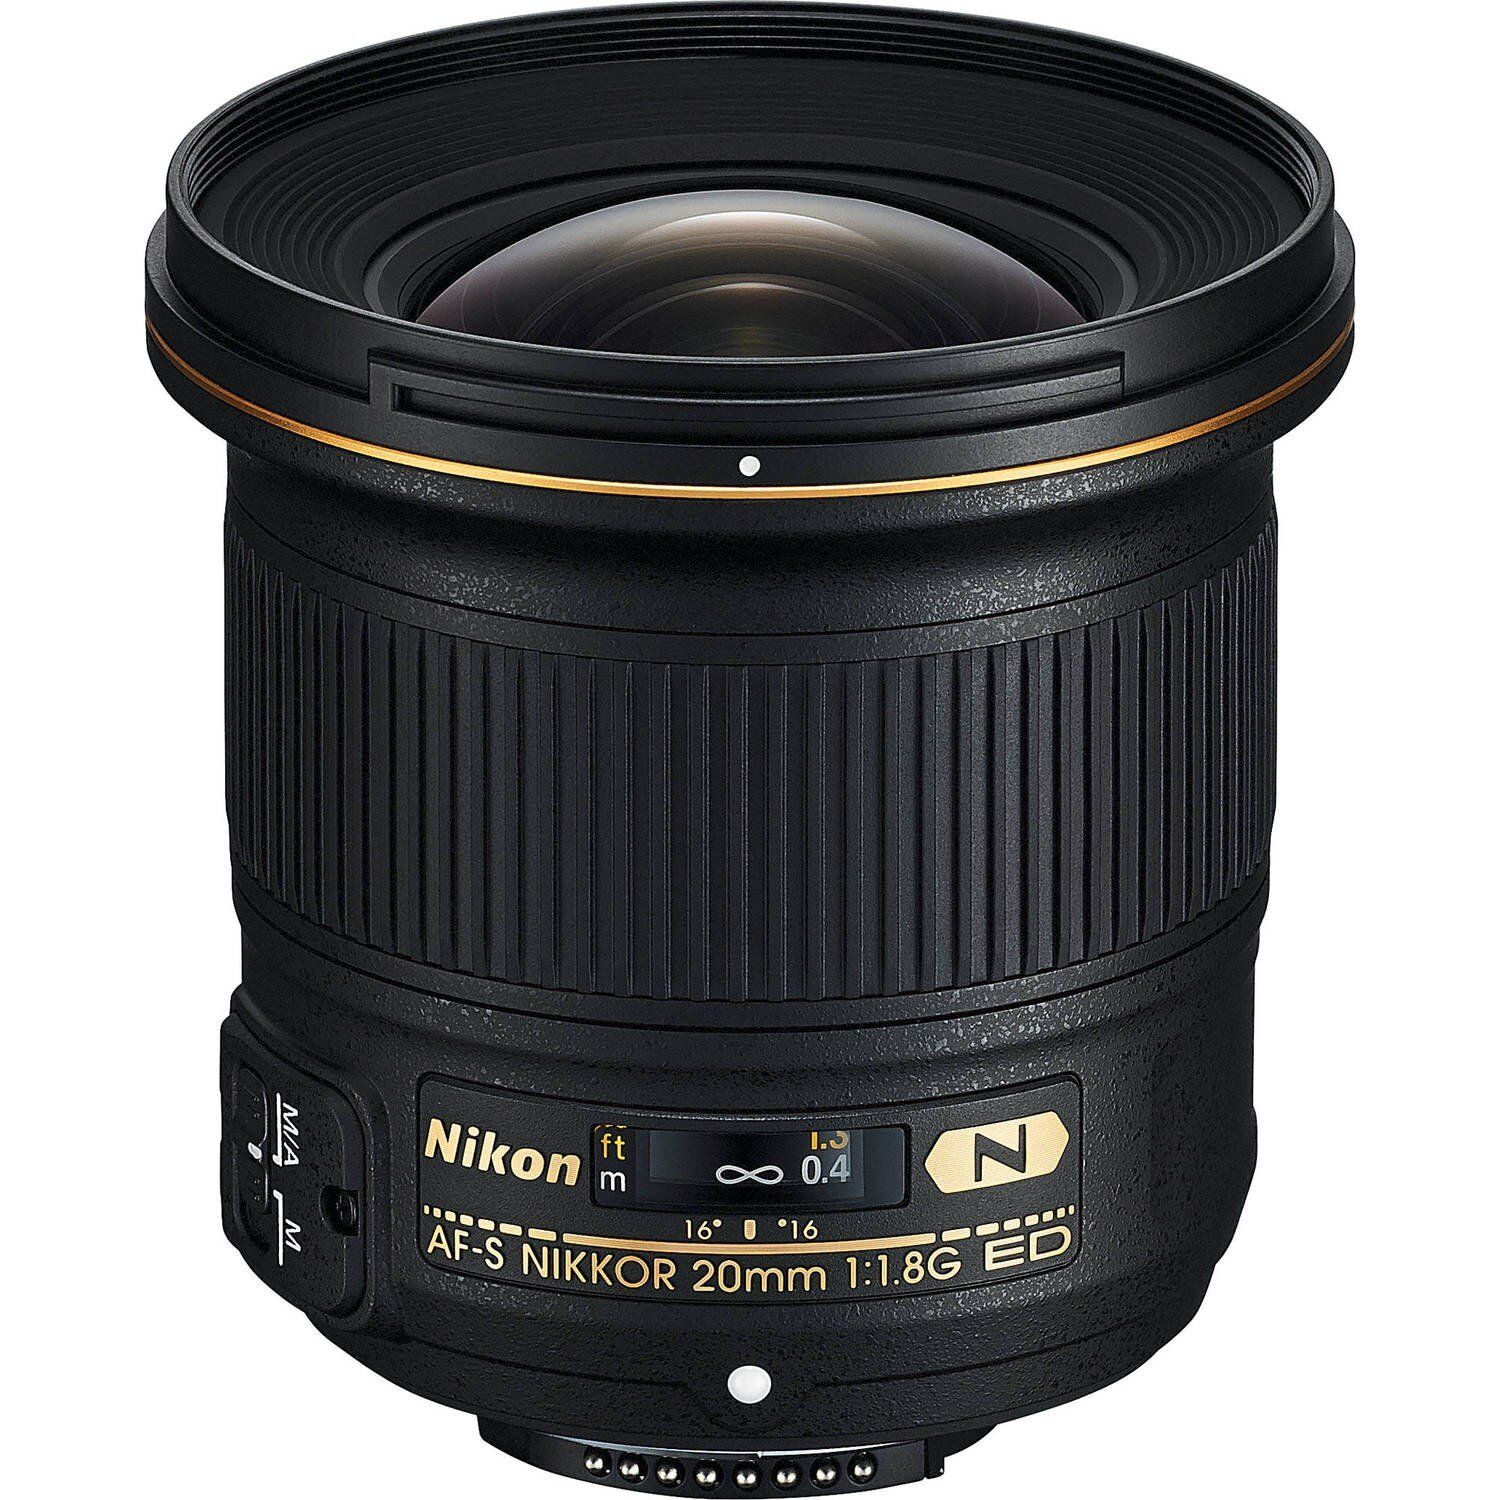  Nikon 20mm f/1.8G ED AF-S Nikkor